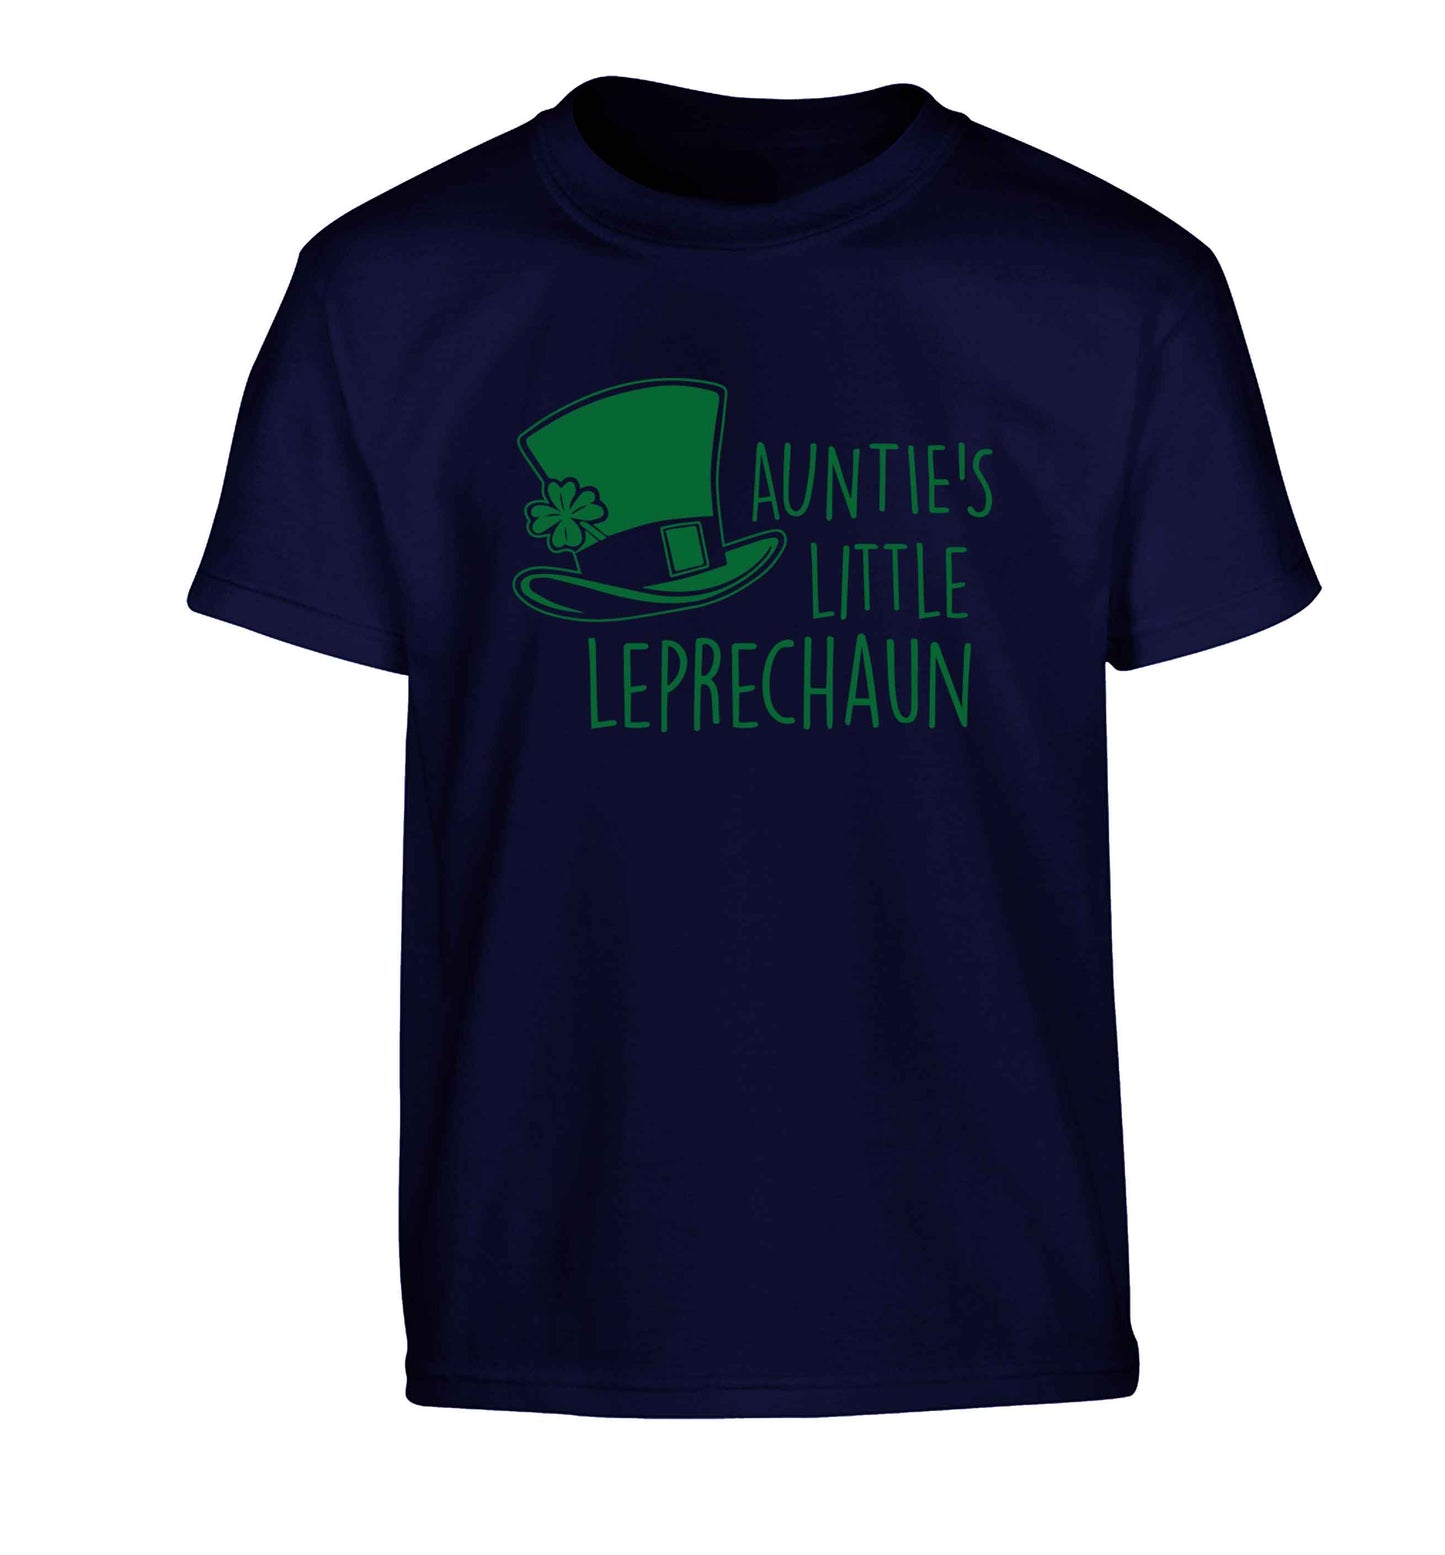 Auntie's little leprechaun Children's navy Tshirt 12-13 Years